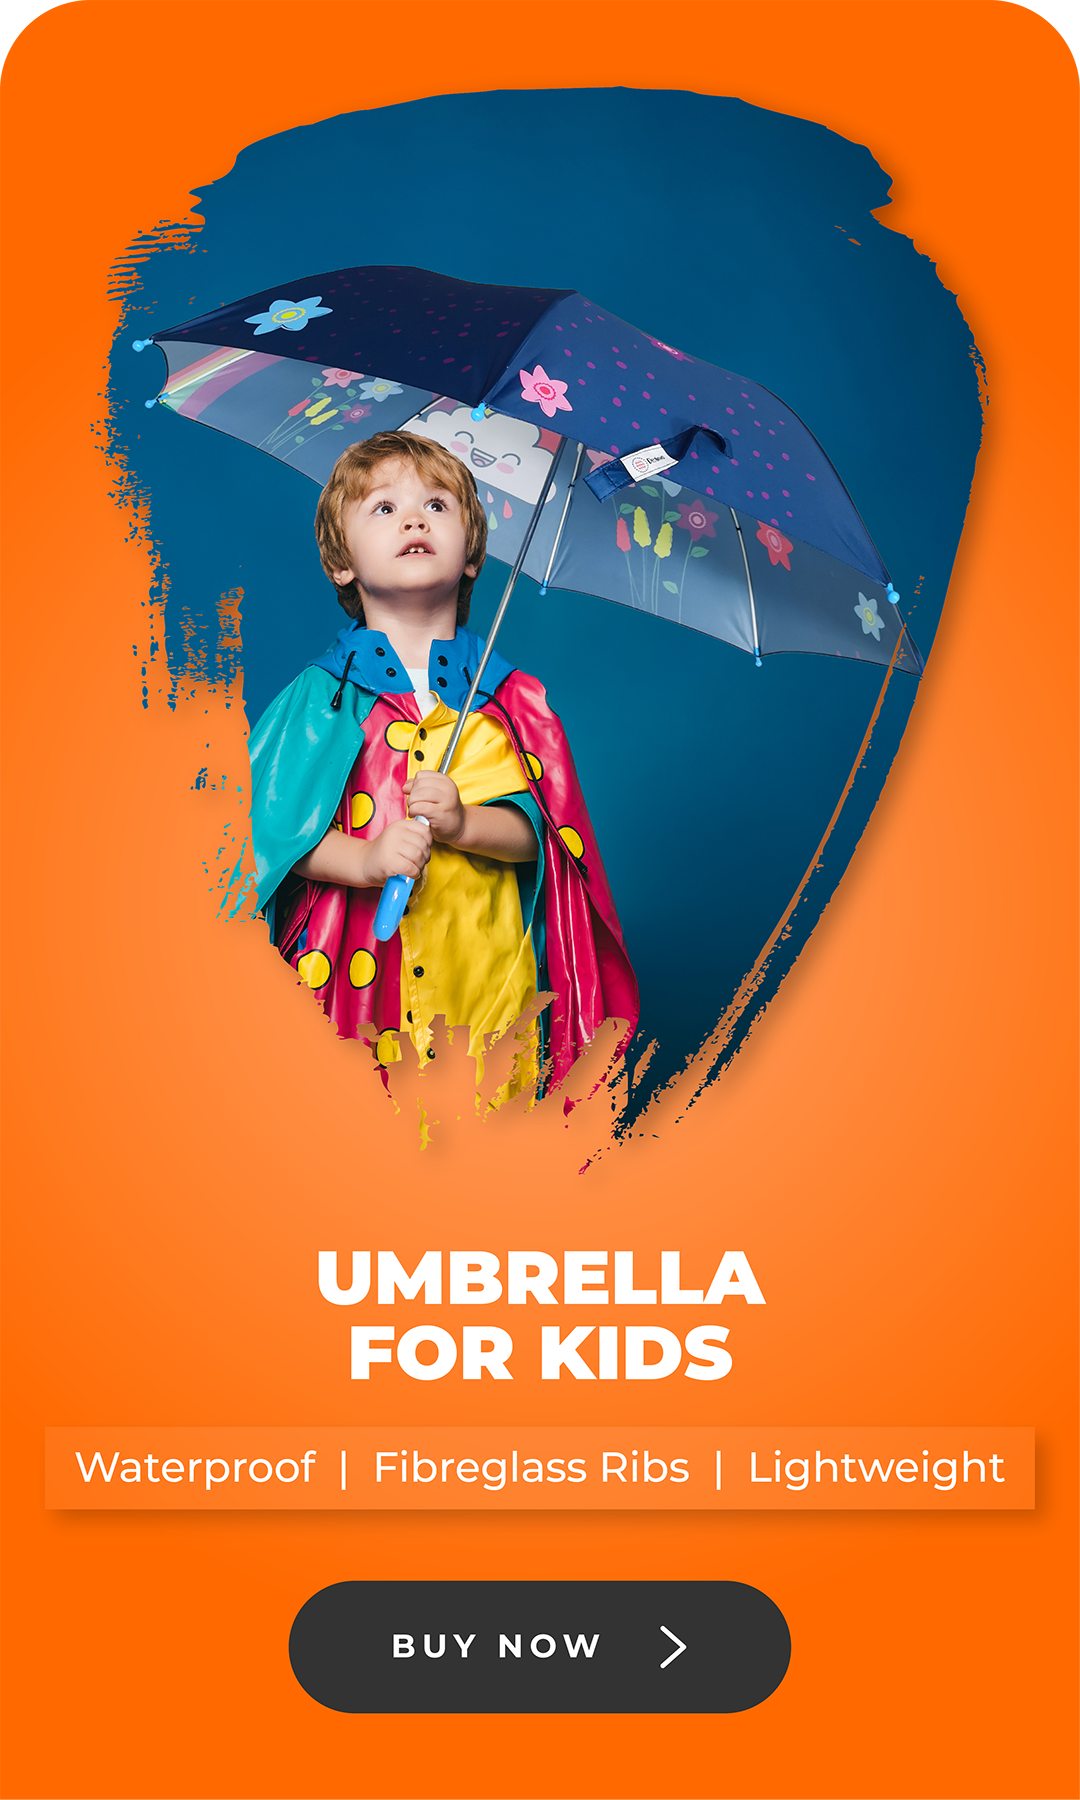 Kids Umbrella Online in India at Destinio